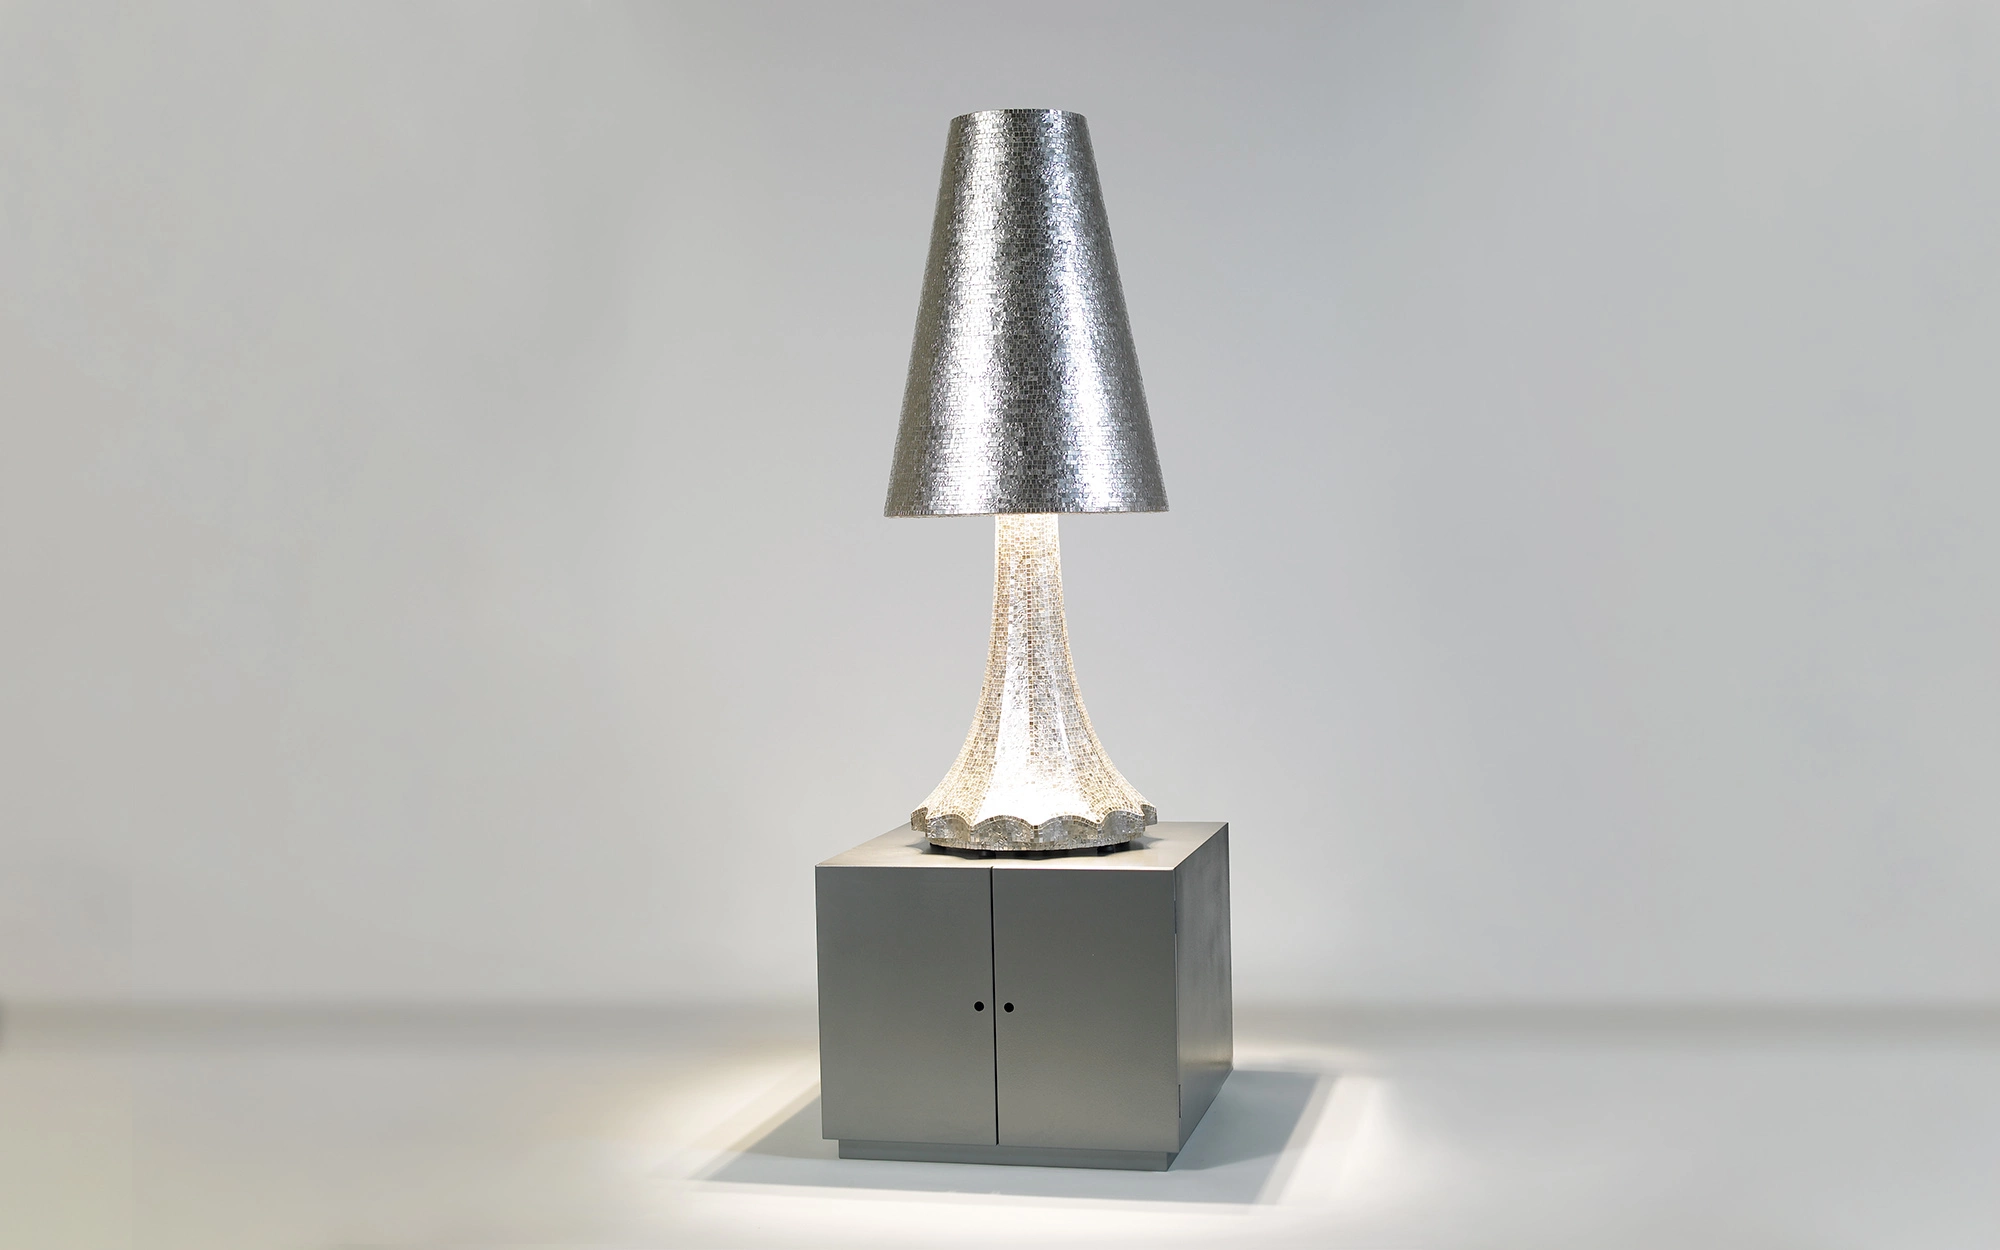 Lampada white gold - Alessandro Mendini - Console - Galerie kreo